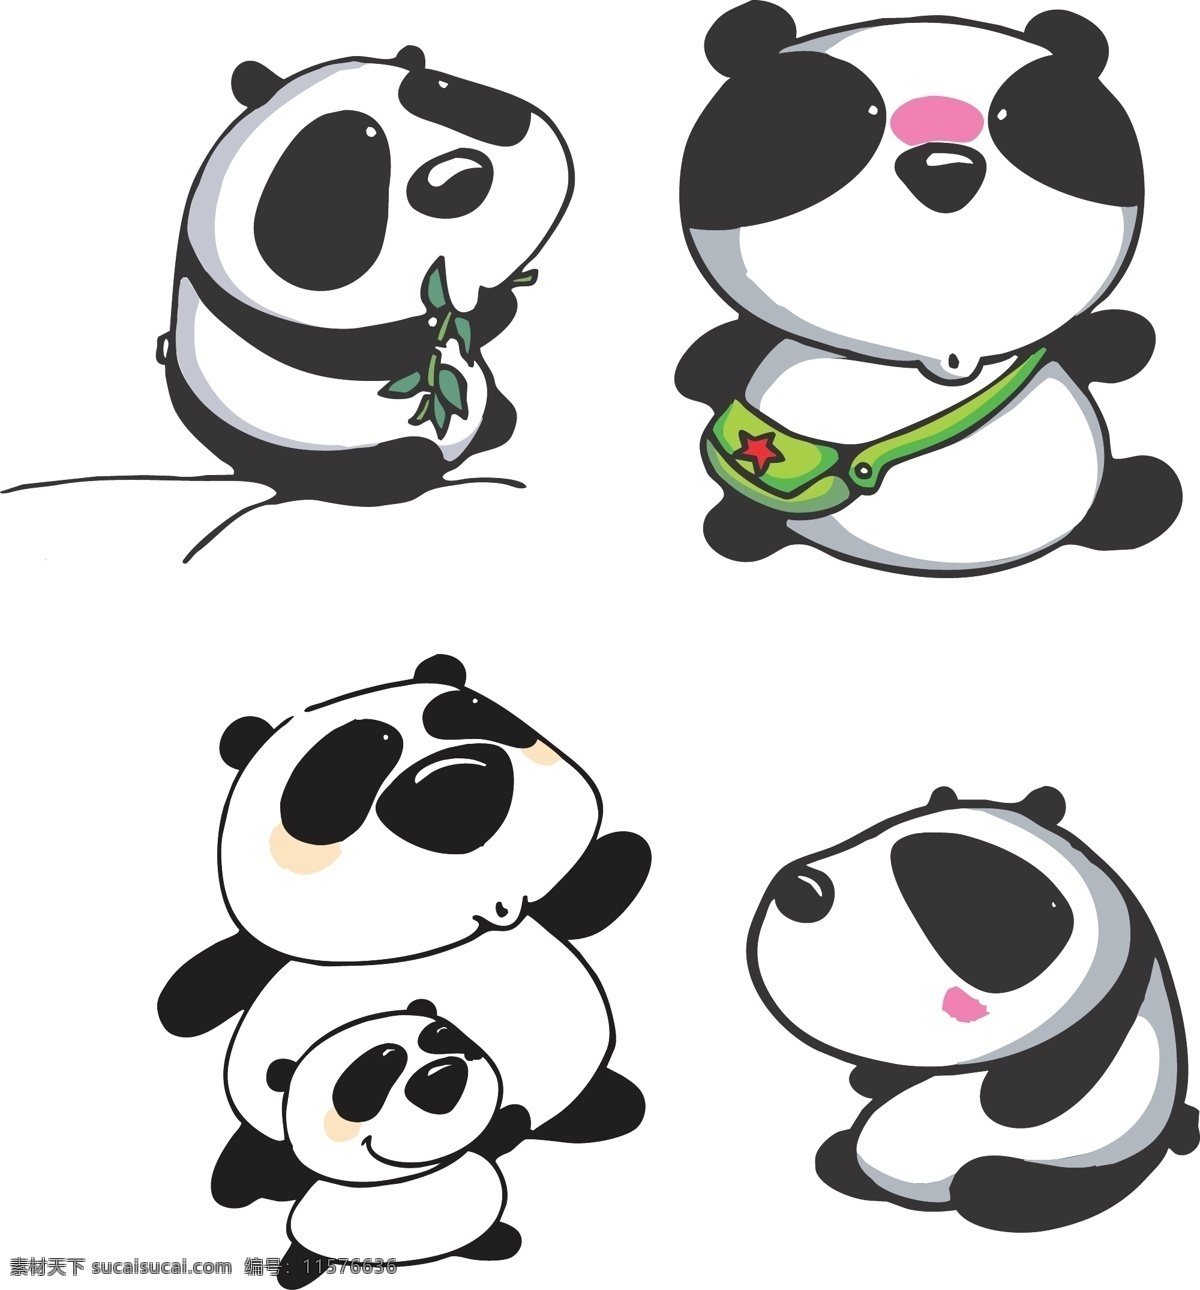 大熊猫 吃竹笋的熊猫 背书包的熊猫 熊猫妈妈 熊猫宝宝 坐着的熊猫 儿童 插画 漫画 卡通 矢量图 卡通设计